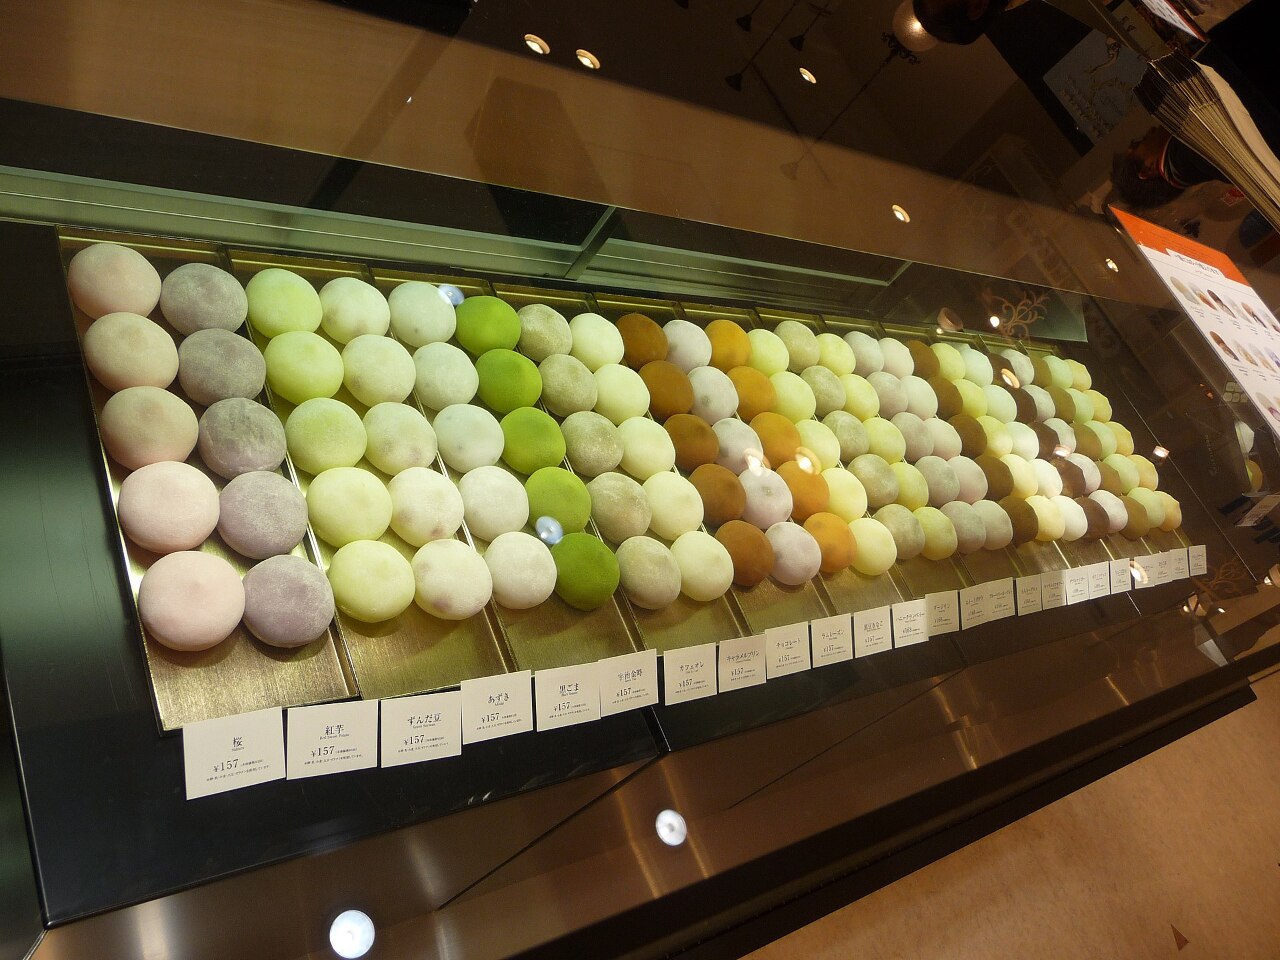 mochi japonais dans une boutique (photo wiki commons)